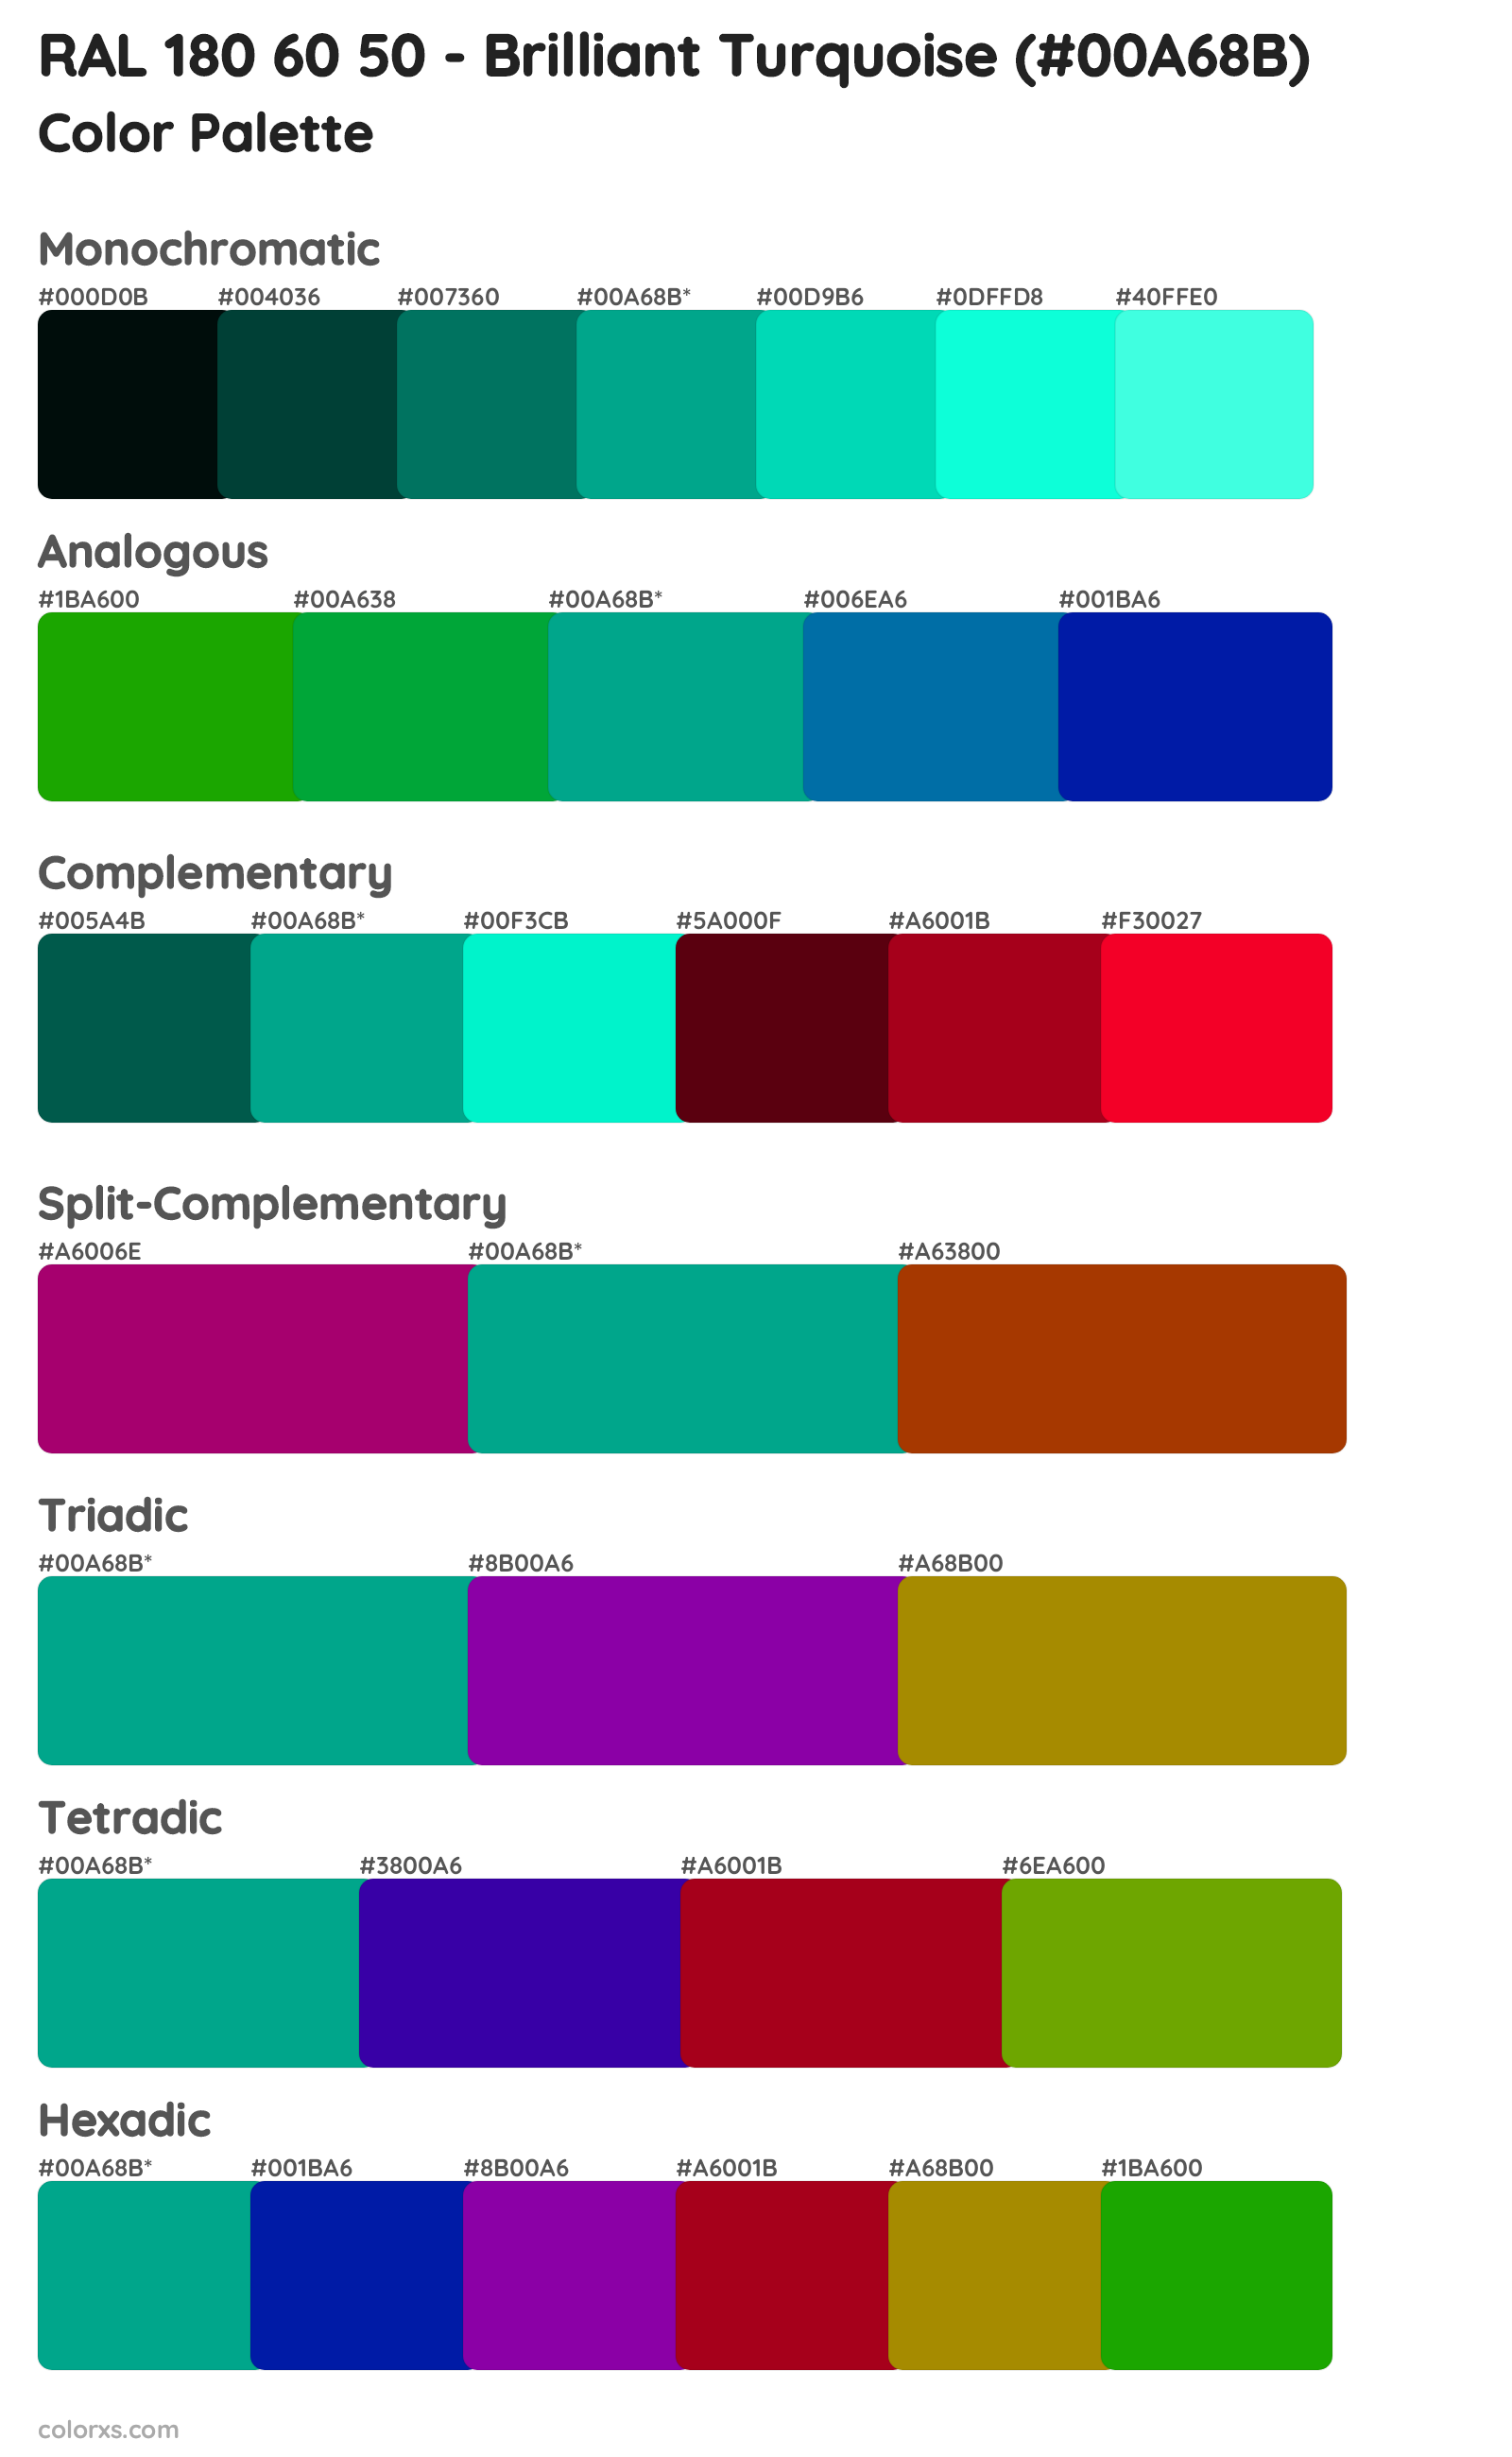 RAL 180 60 50 - Brilliant Turquoise Color Scheme Palettes